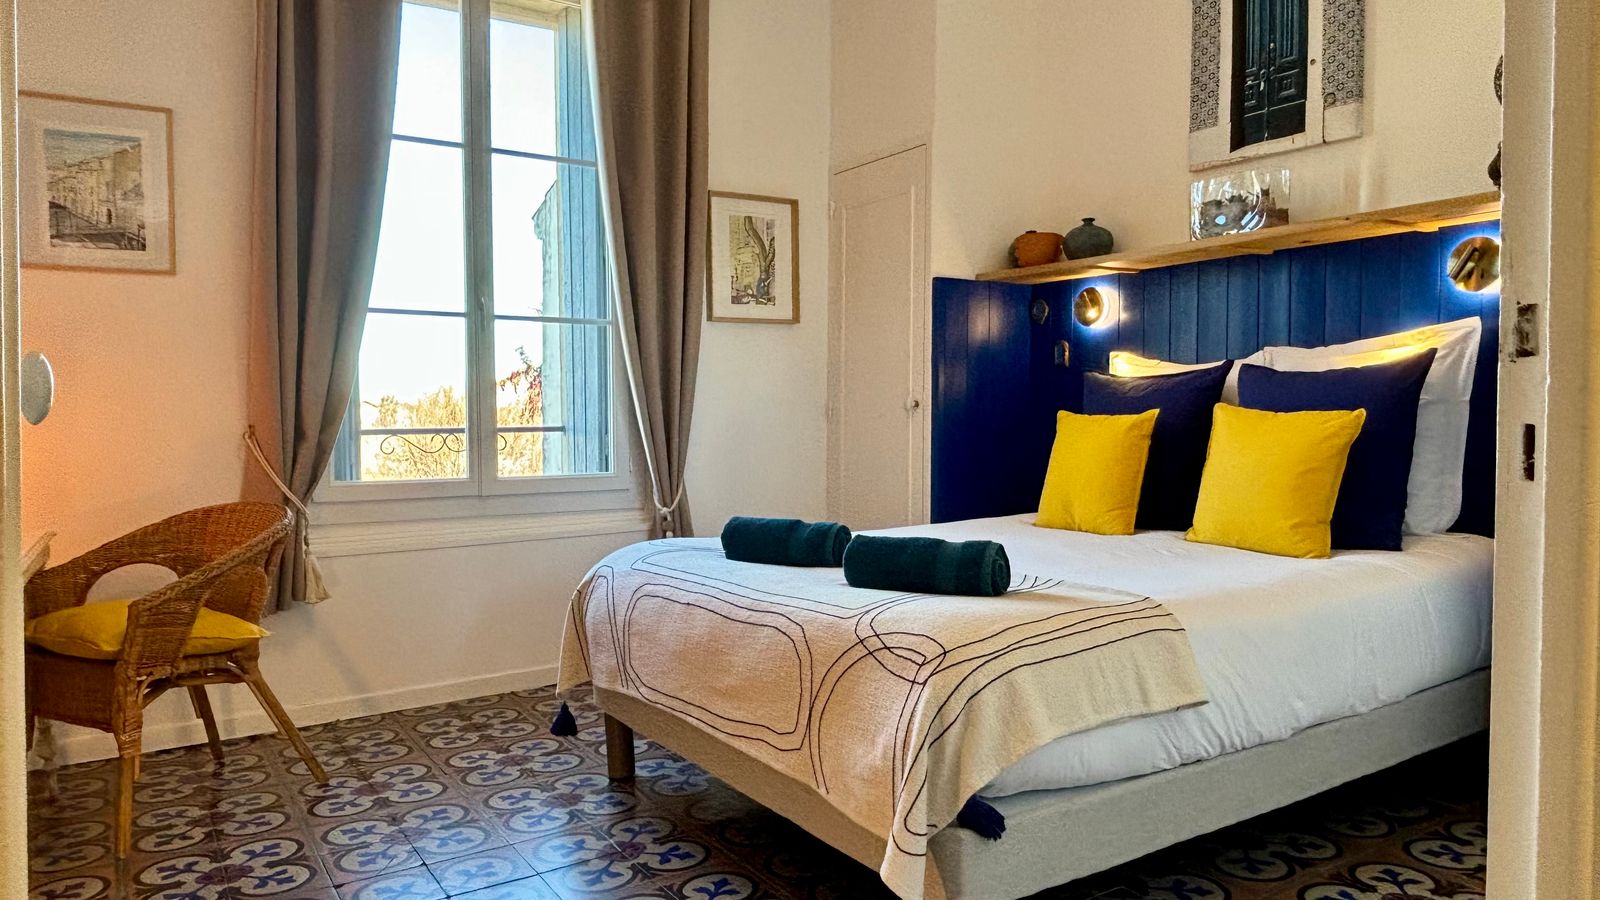 Intérieur d'une chambre aux draps jaune et bleu, une chaise en osier se trouve à côté du lit